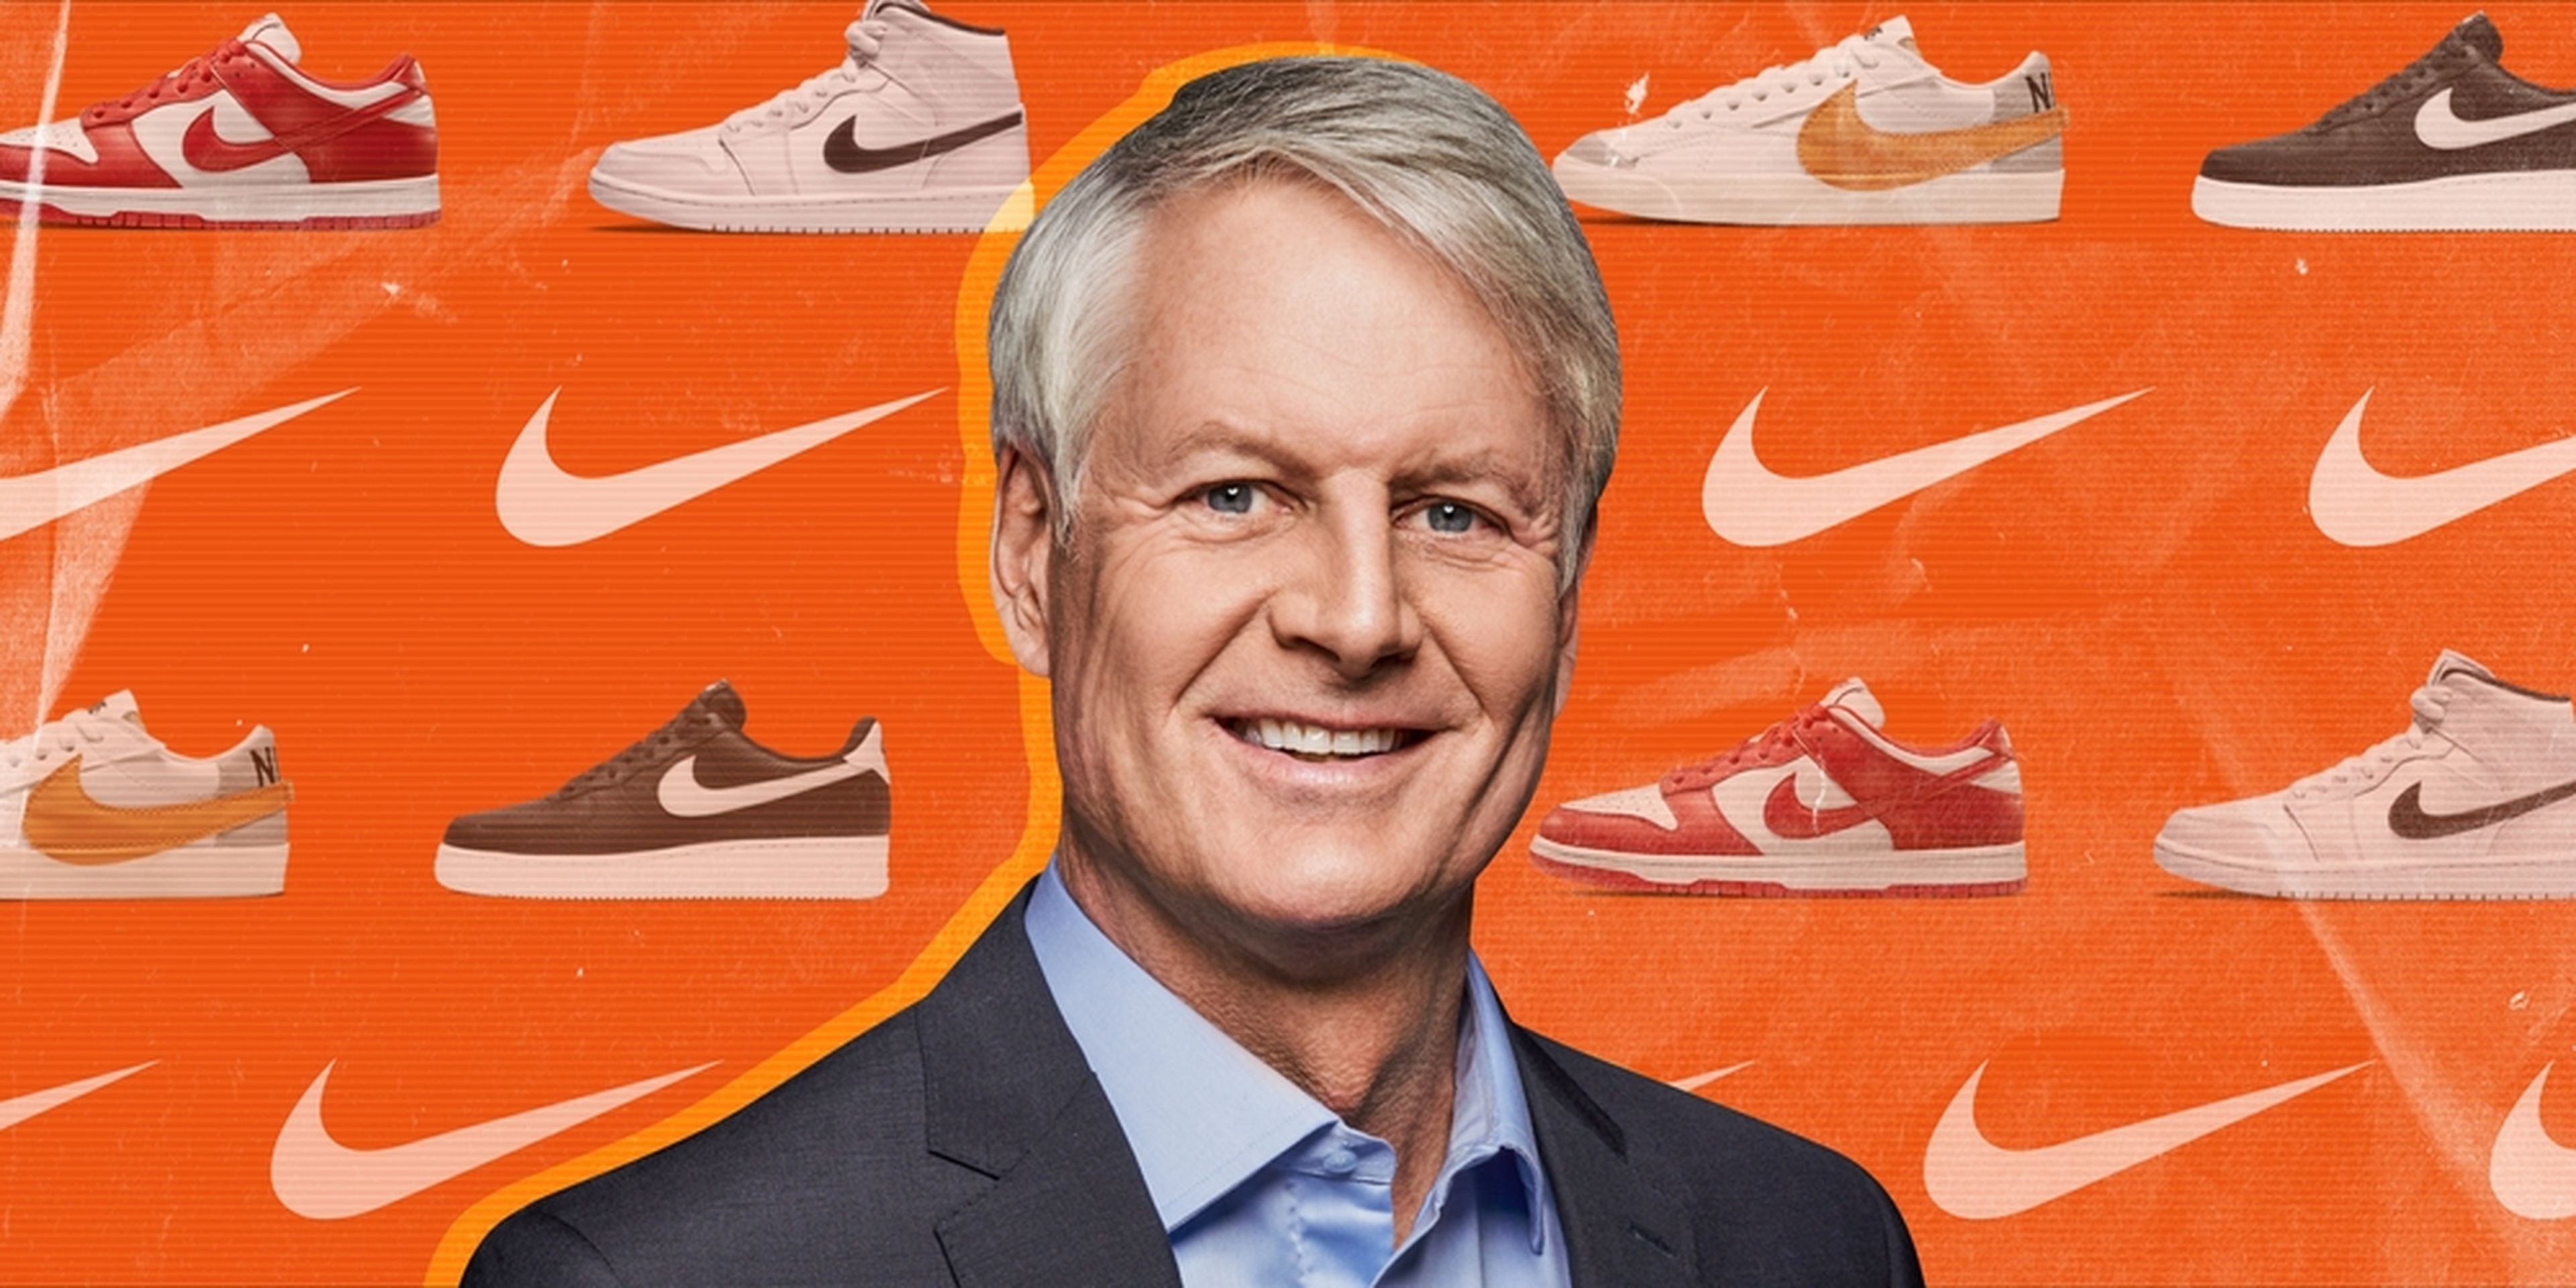 auge revista Orgullo Así han sido los 2 primeros años del nuevo CEO de Nike | Business Insider  España